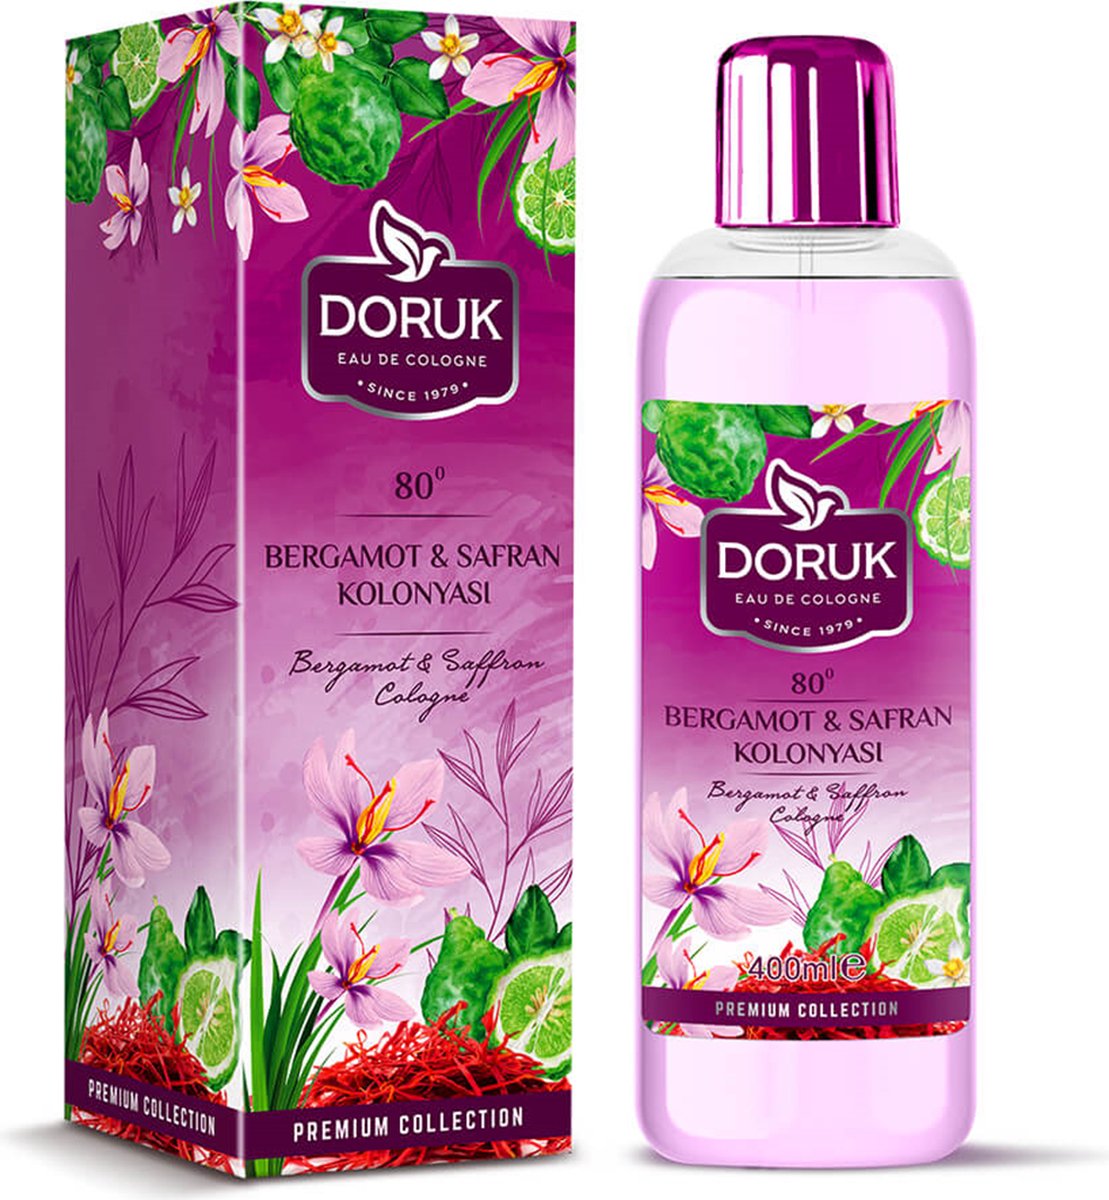 Doruk - Eau de cologne 400ml - 80° alcohol - Bergamot en saffraan cologne - Optimale desinfectie van handen